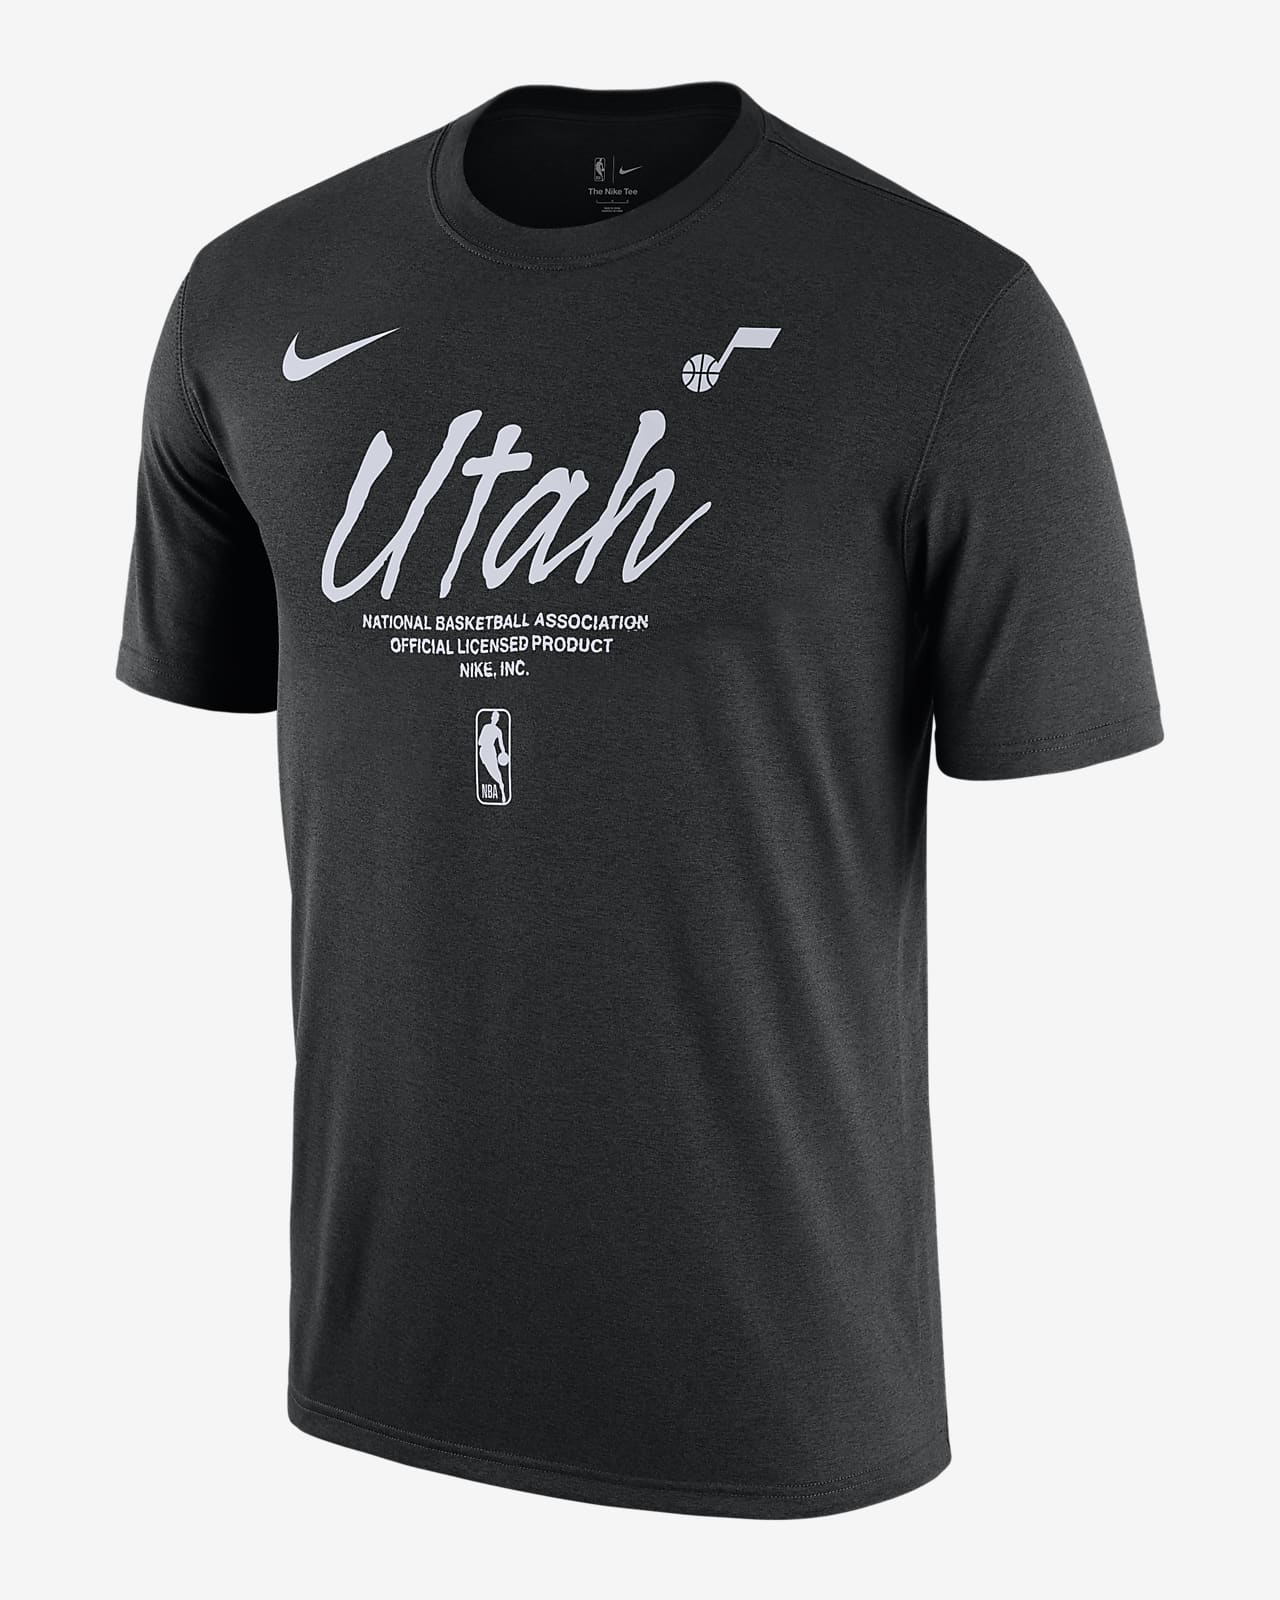 Utah Jazz Essential Men's Nike NBA T-Shirt